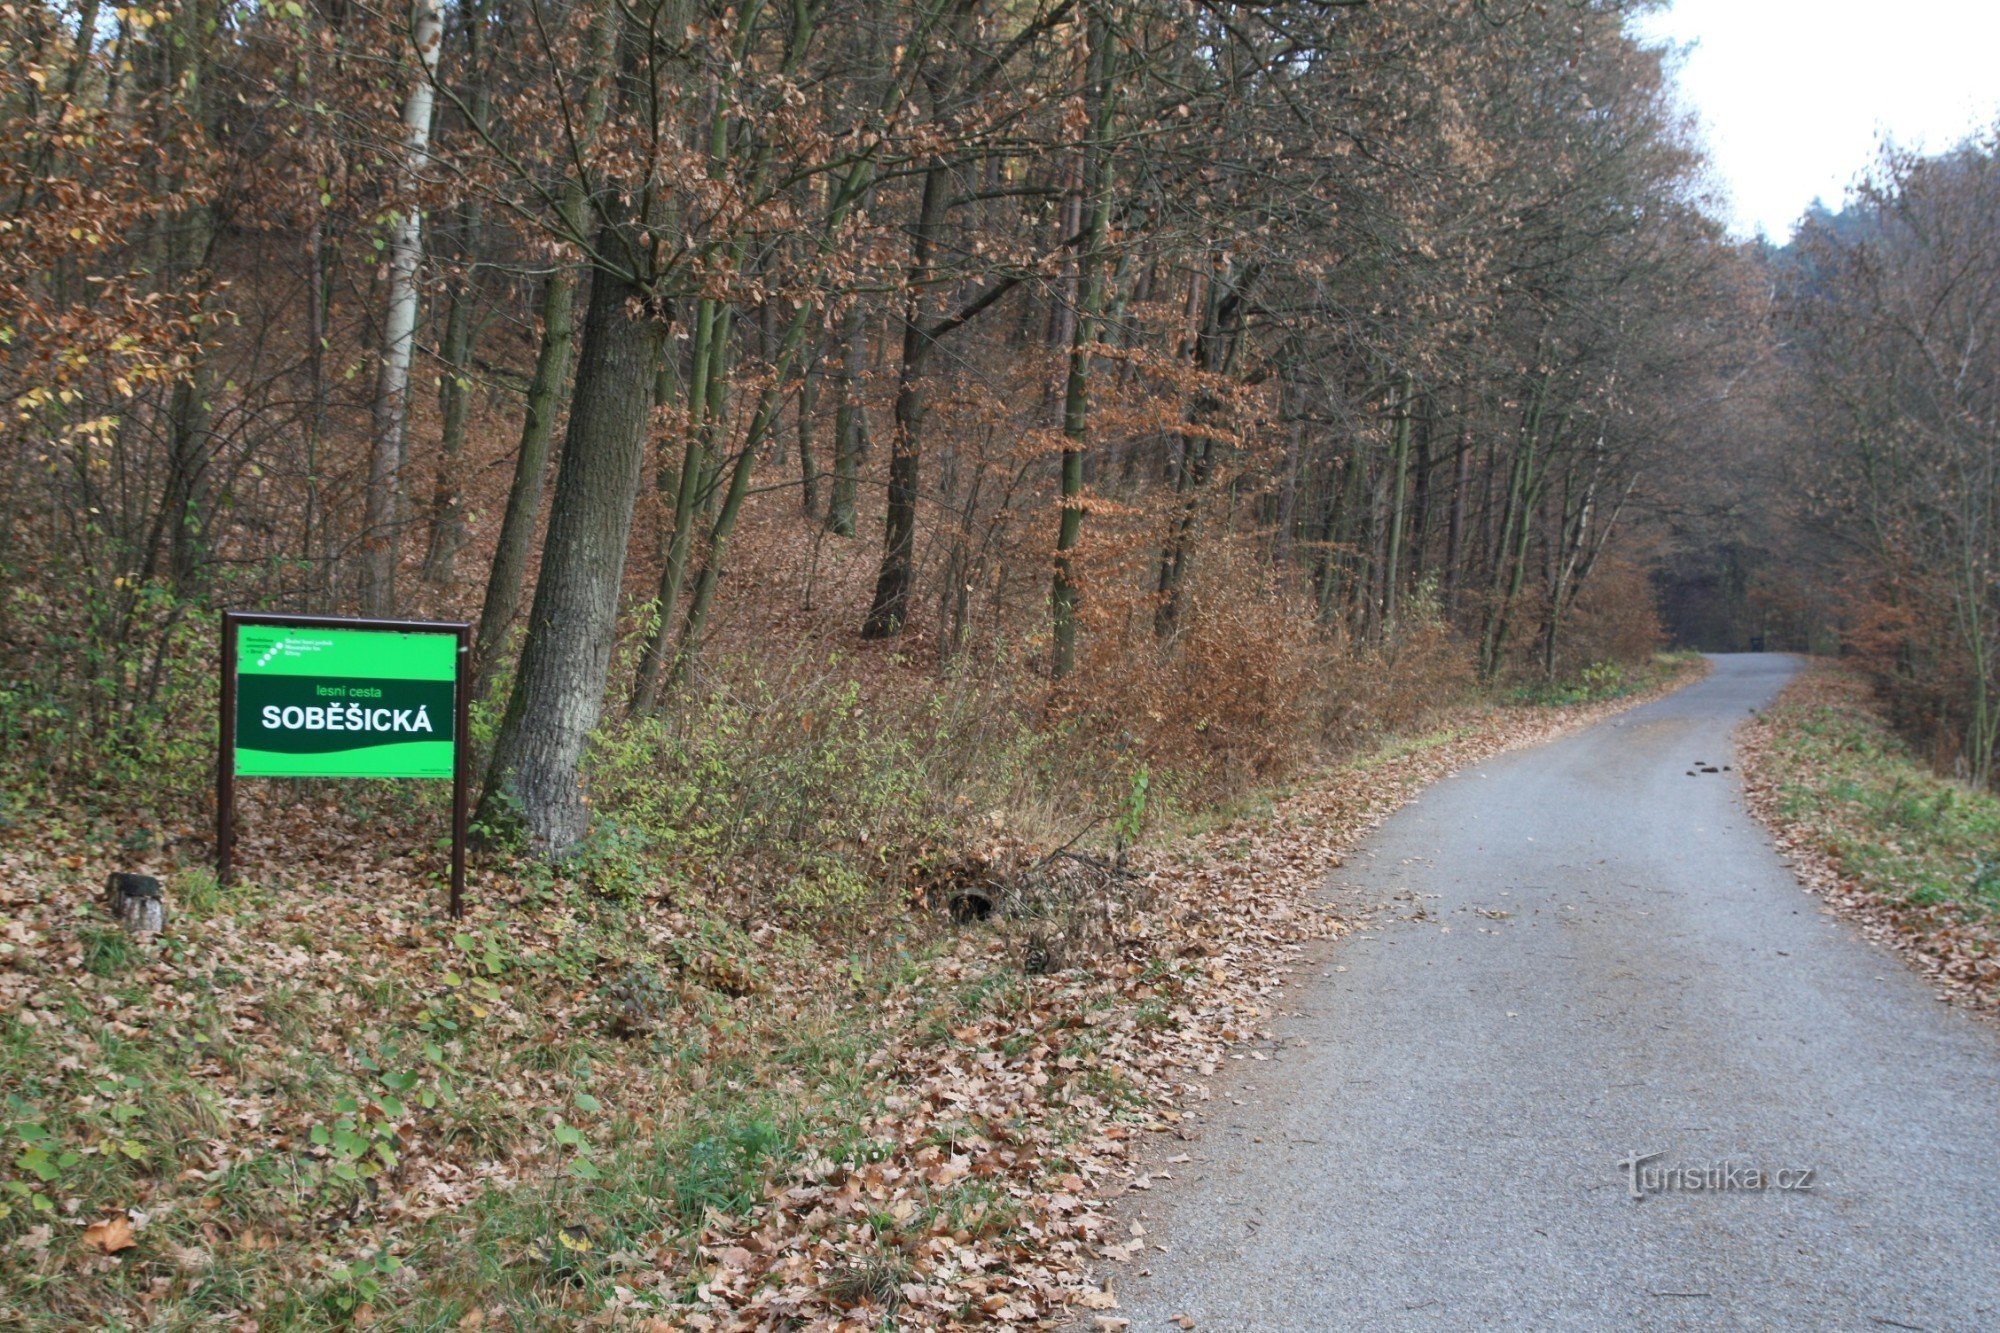 Το Soběšická cesta ξεκινά στο τέλος του χωριού στην αρχή του δάσους